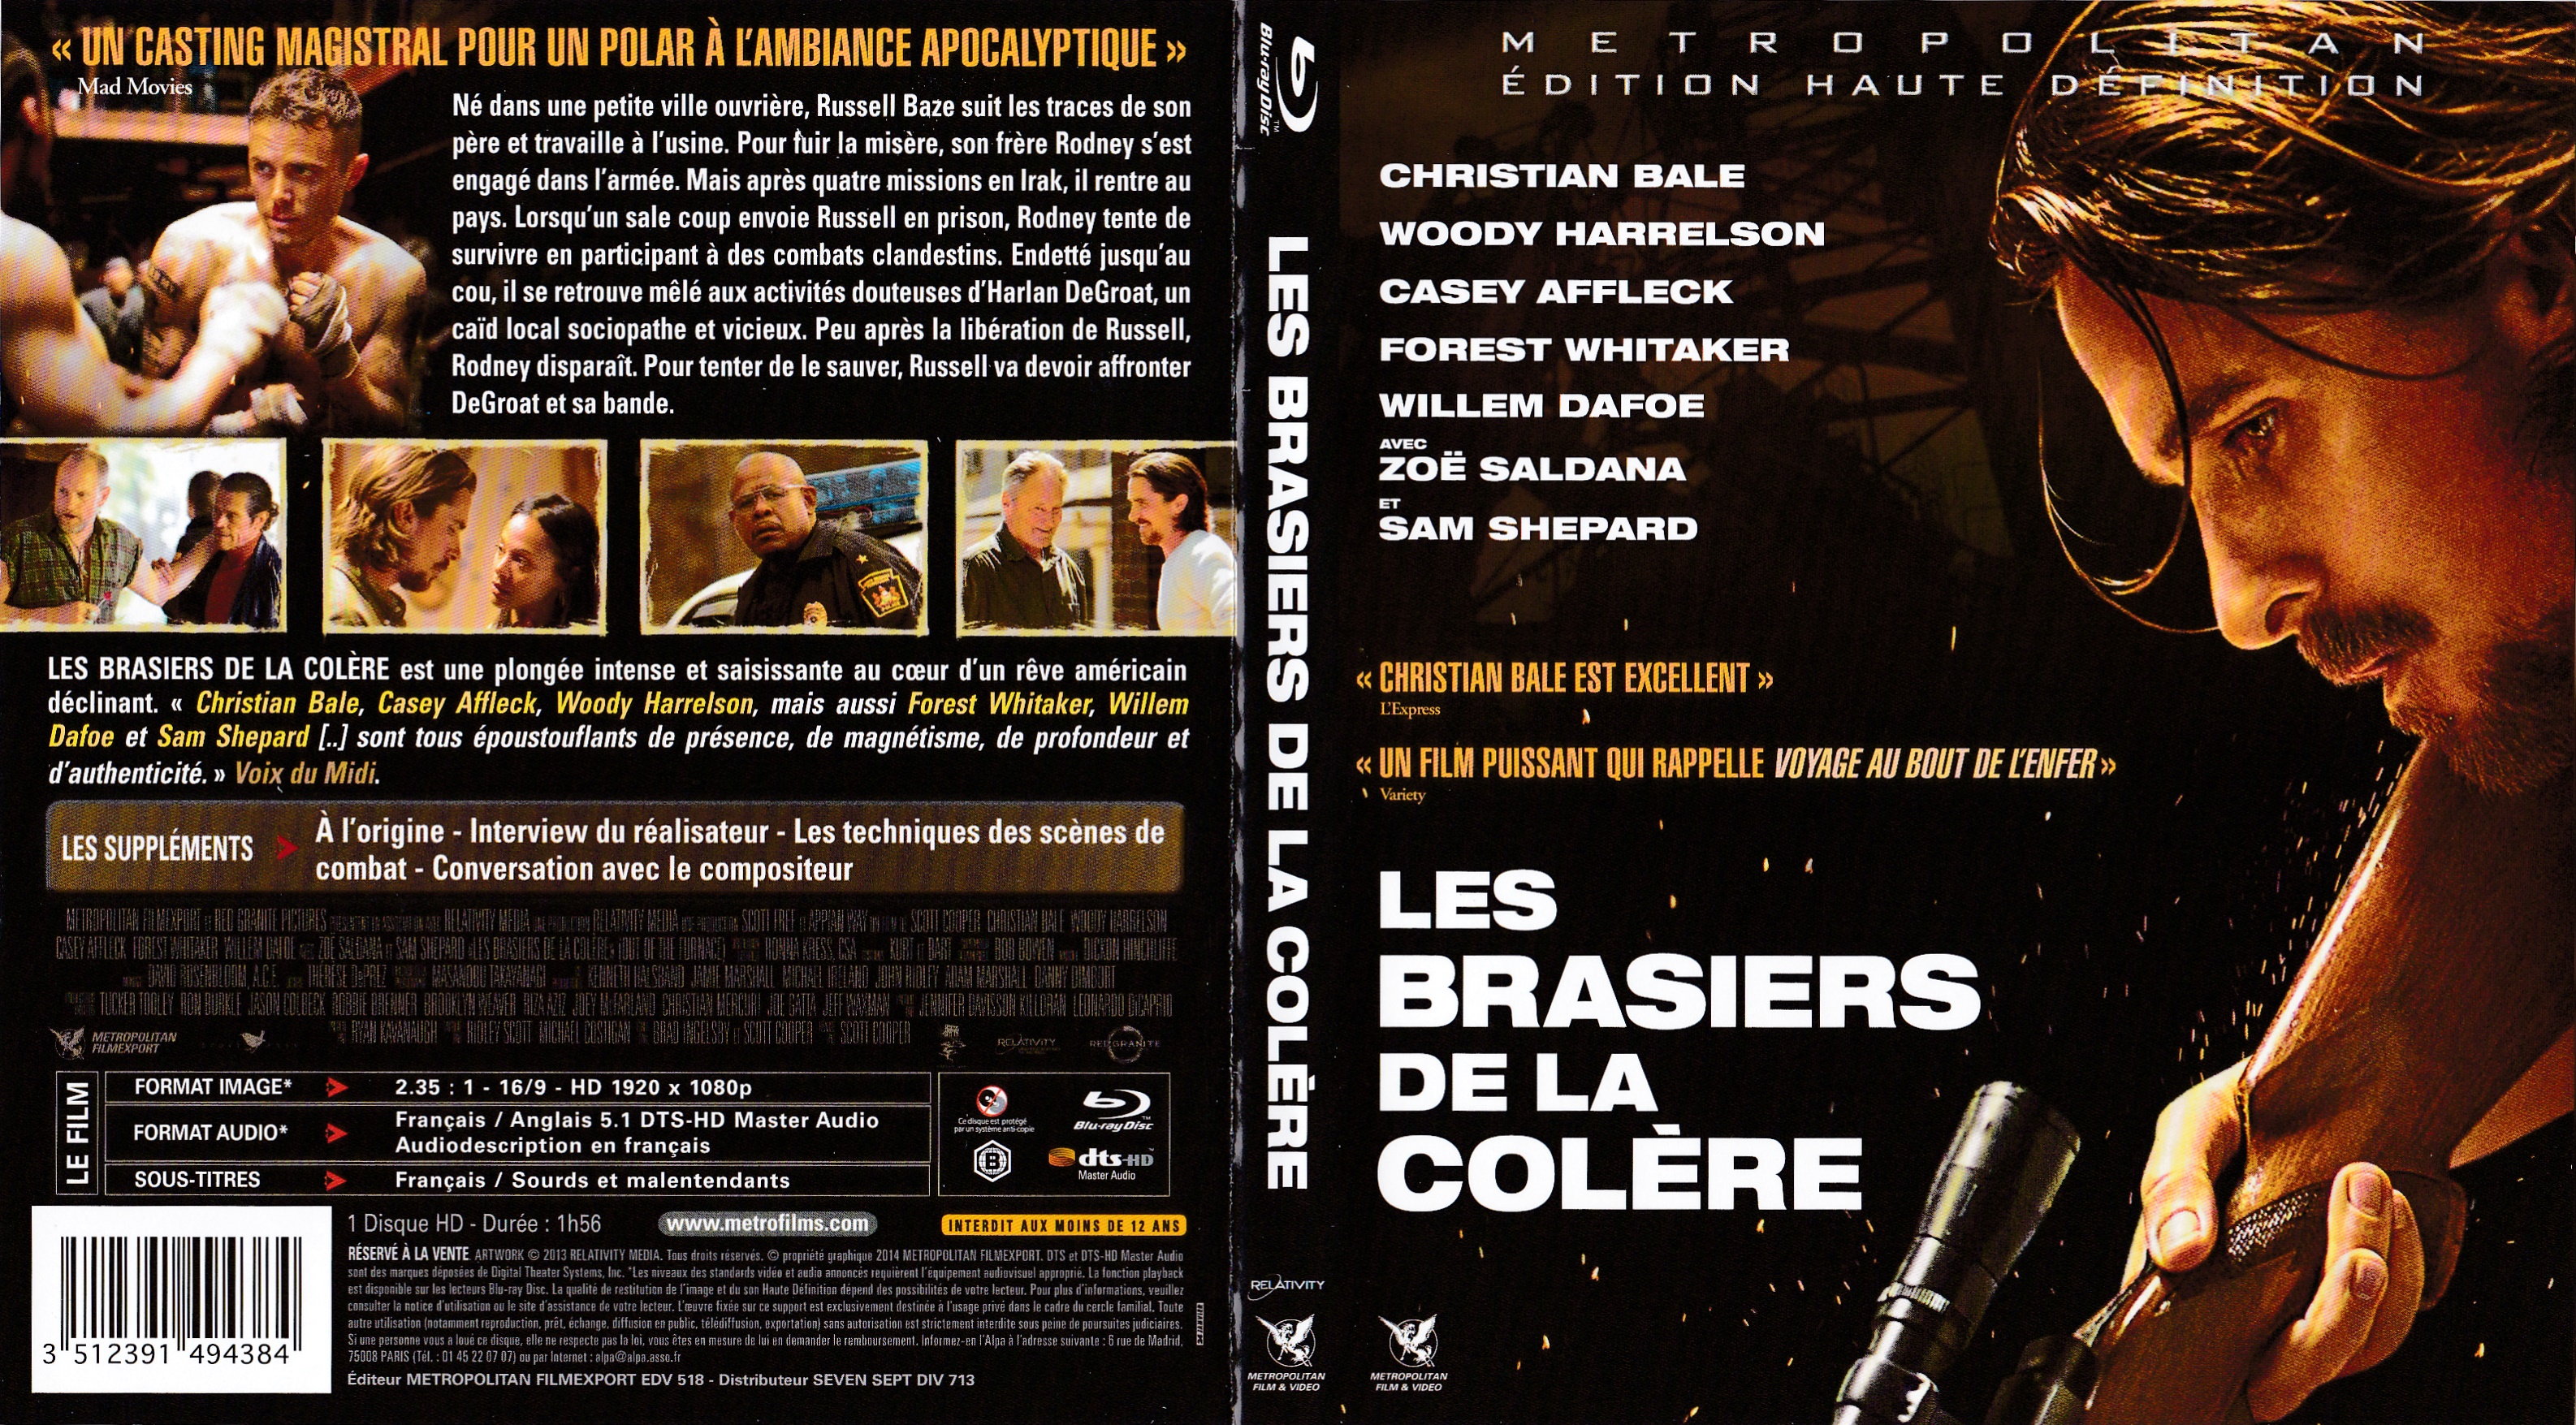 Jaquette DVD Les Brasiers de la Colre (BLU-RAY)